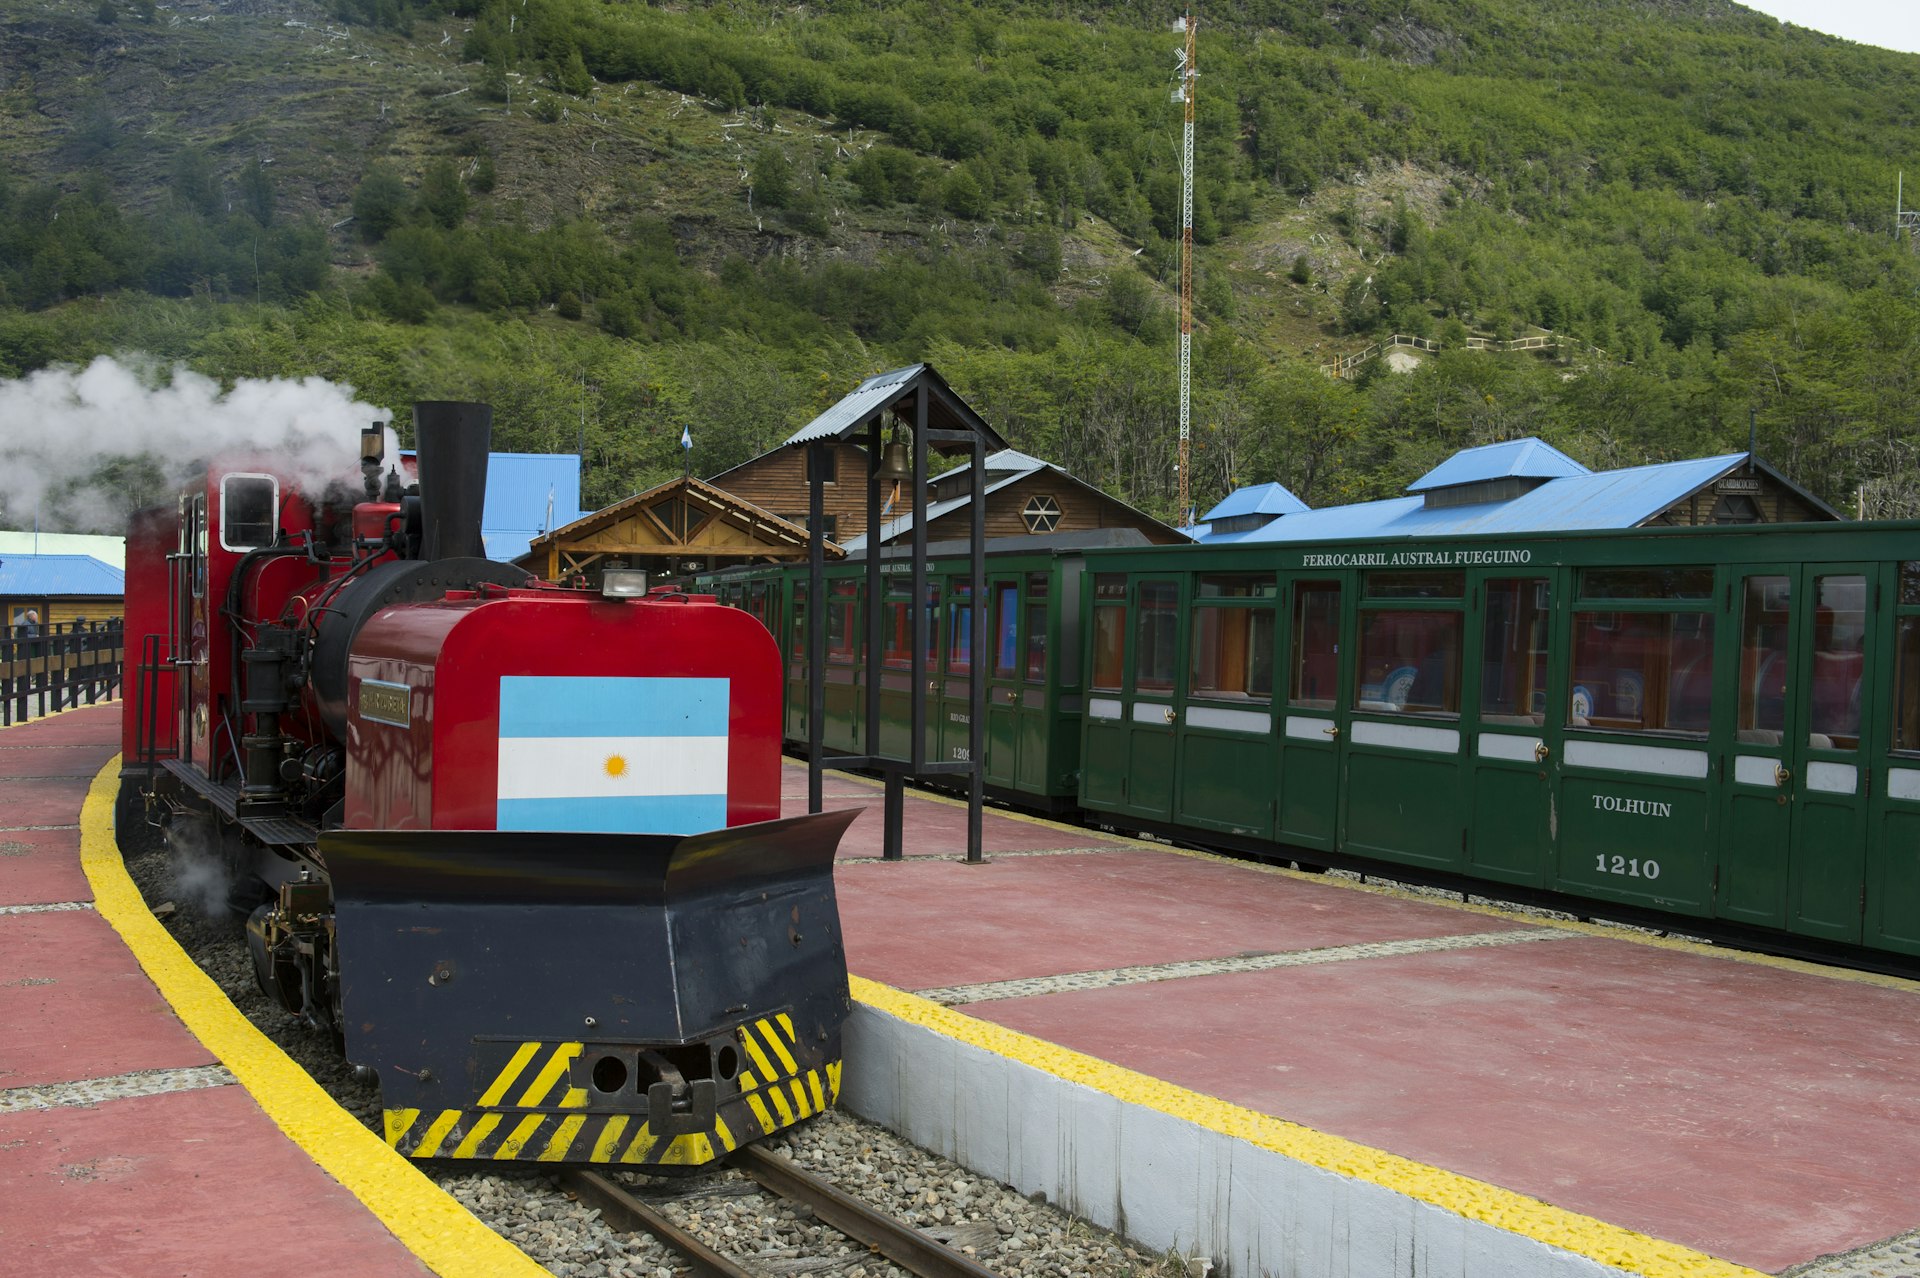 The Tren del Fen de Mundo train at the station in Ushuaia